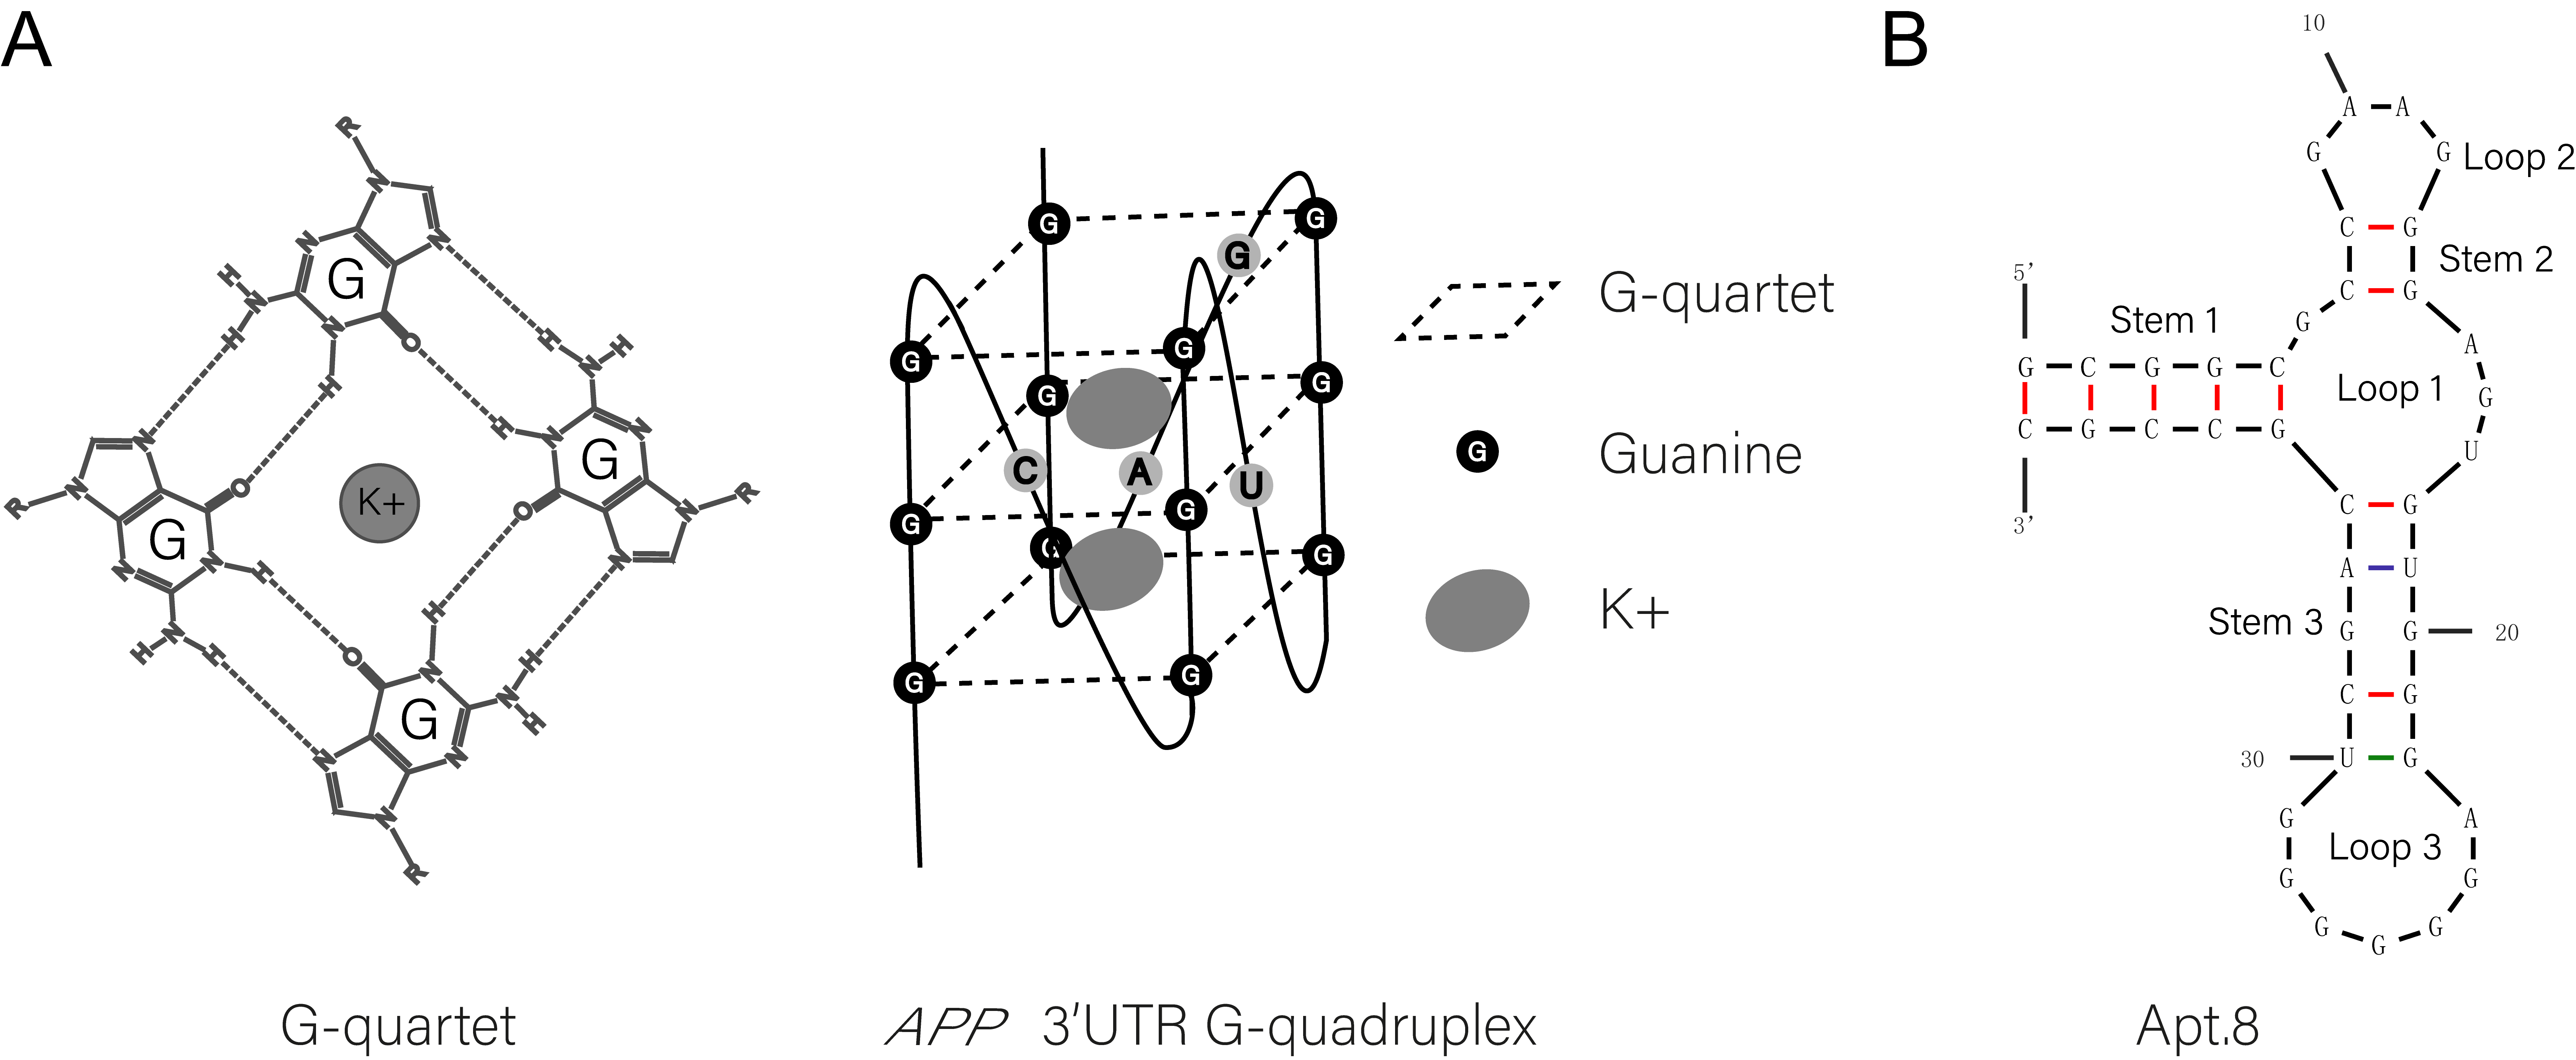 Structure of G-quartet, APP 3’UTR G-quadruplex, and Apt.8 aptamer